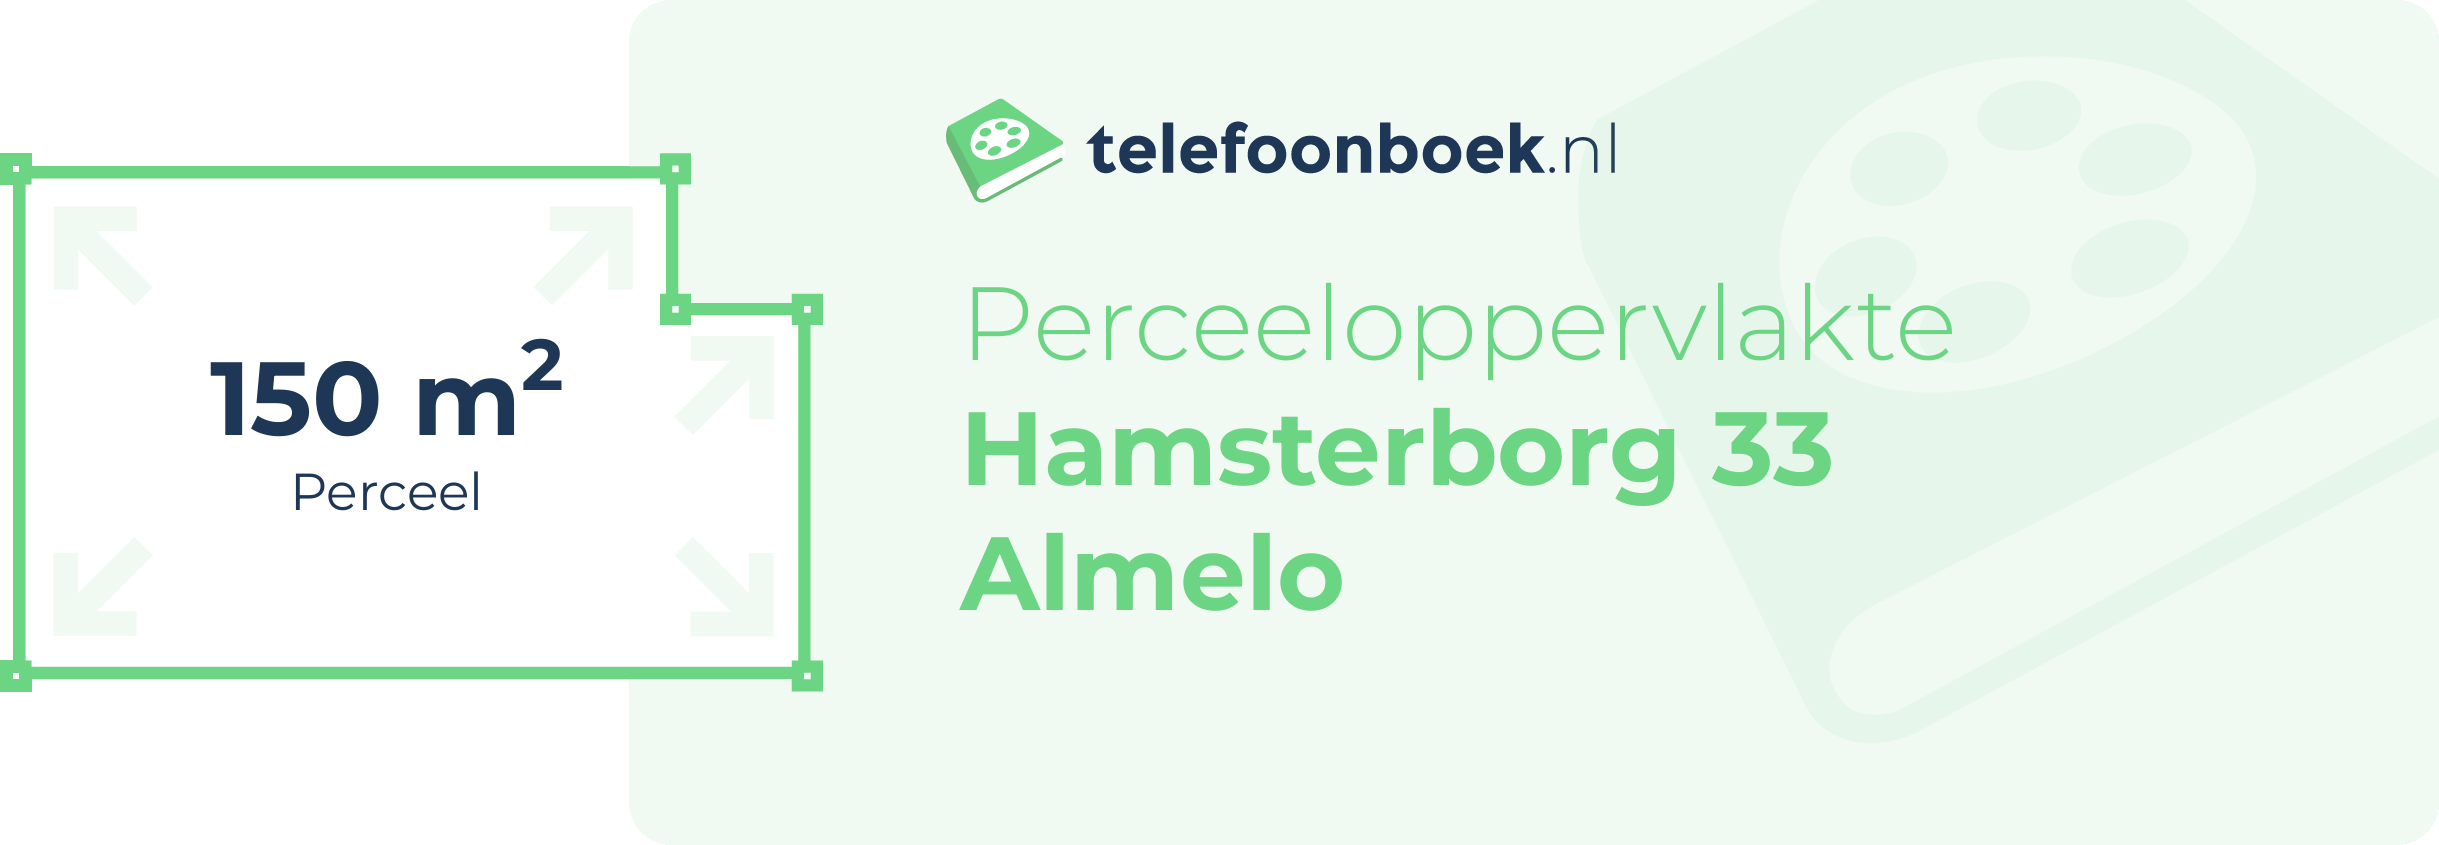 Perceeloppervlakte Hamsterborg 33 Almelo